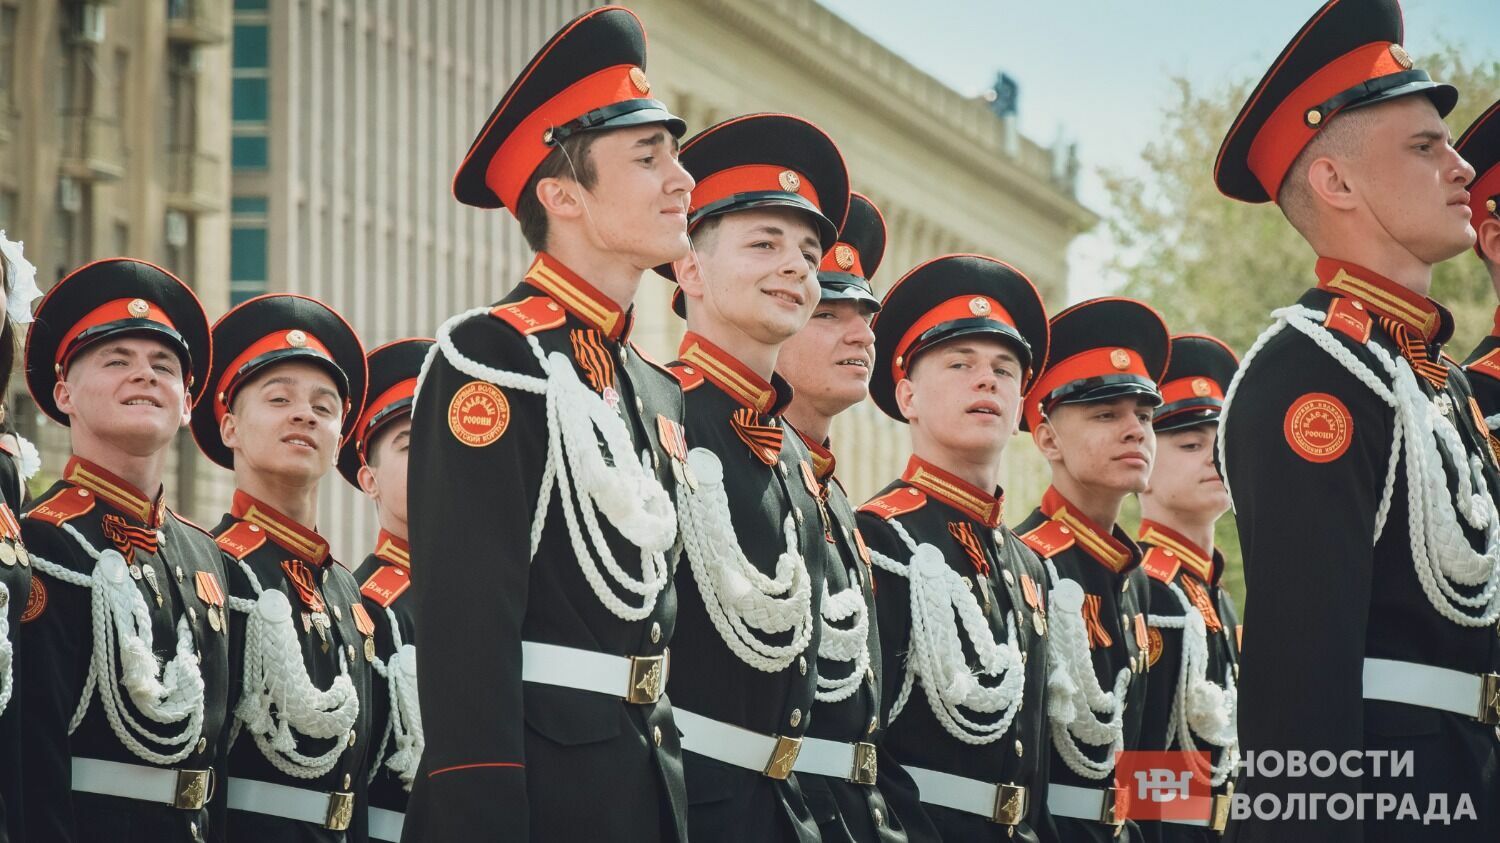 Военный парад - самое зрелищное мероприятие на День Победы в Волгограде.